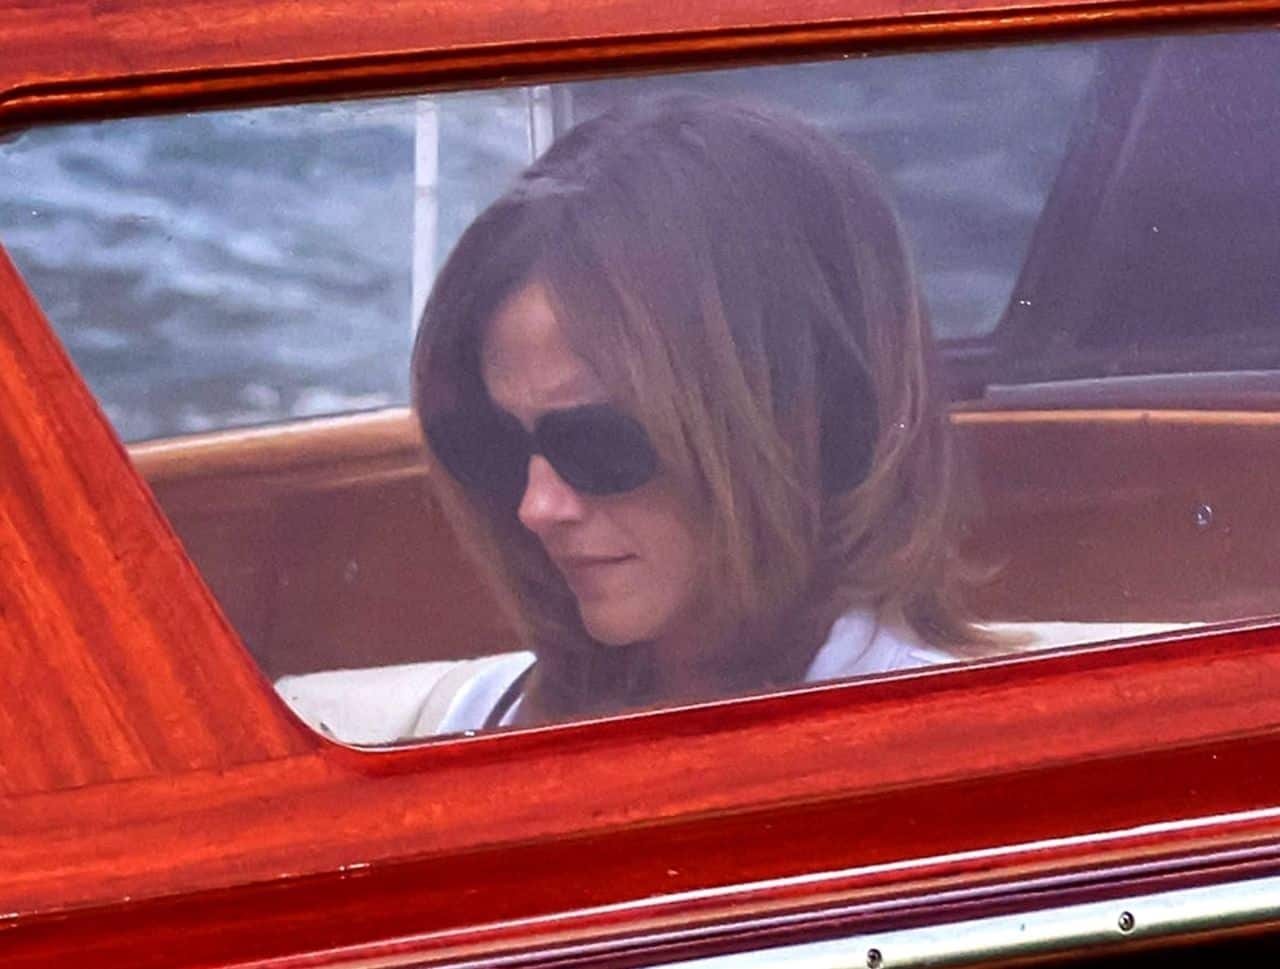 Emma Watson's Stylish Boat Ride to Fondazione Giorgio Cini Onlus in Venice